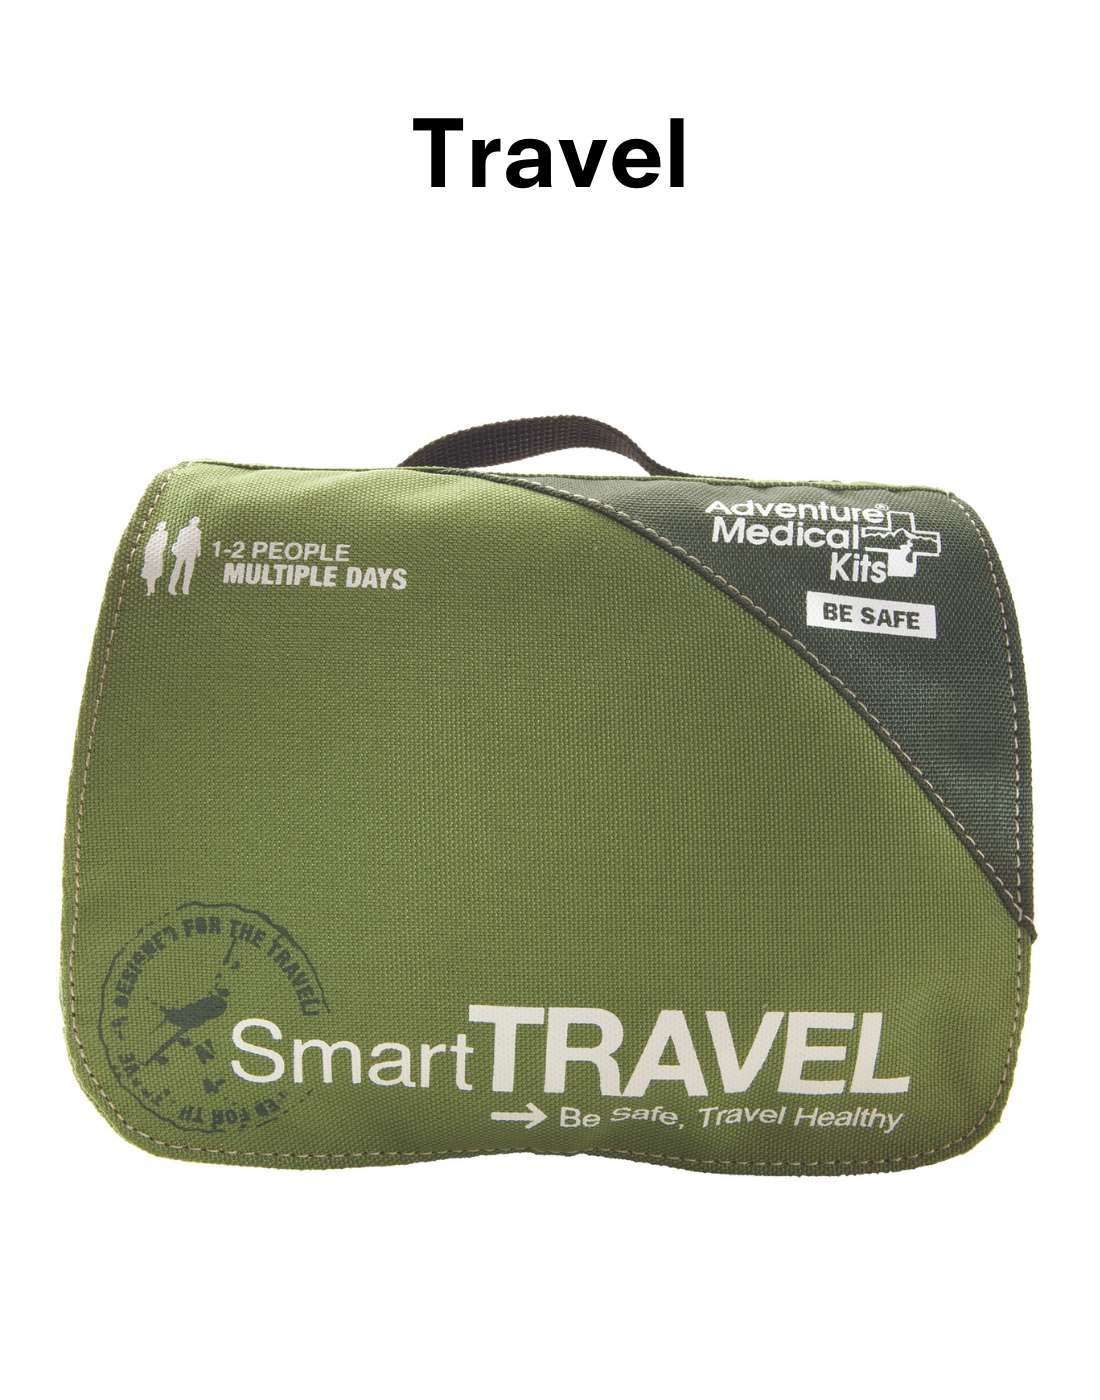 Smart Travel Kit